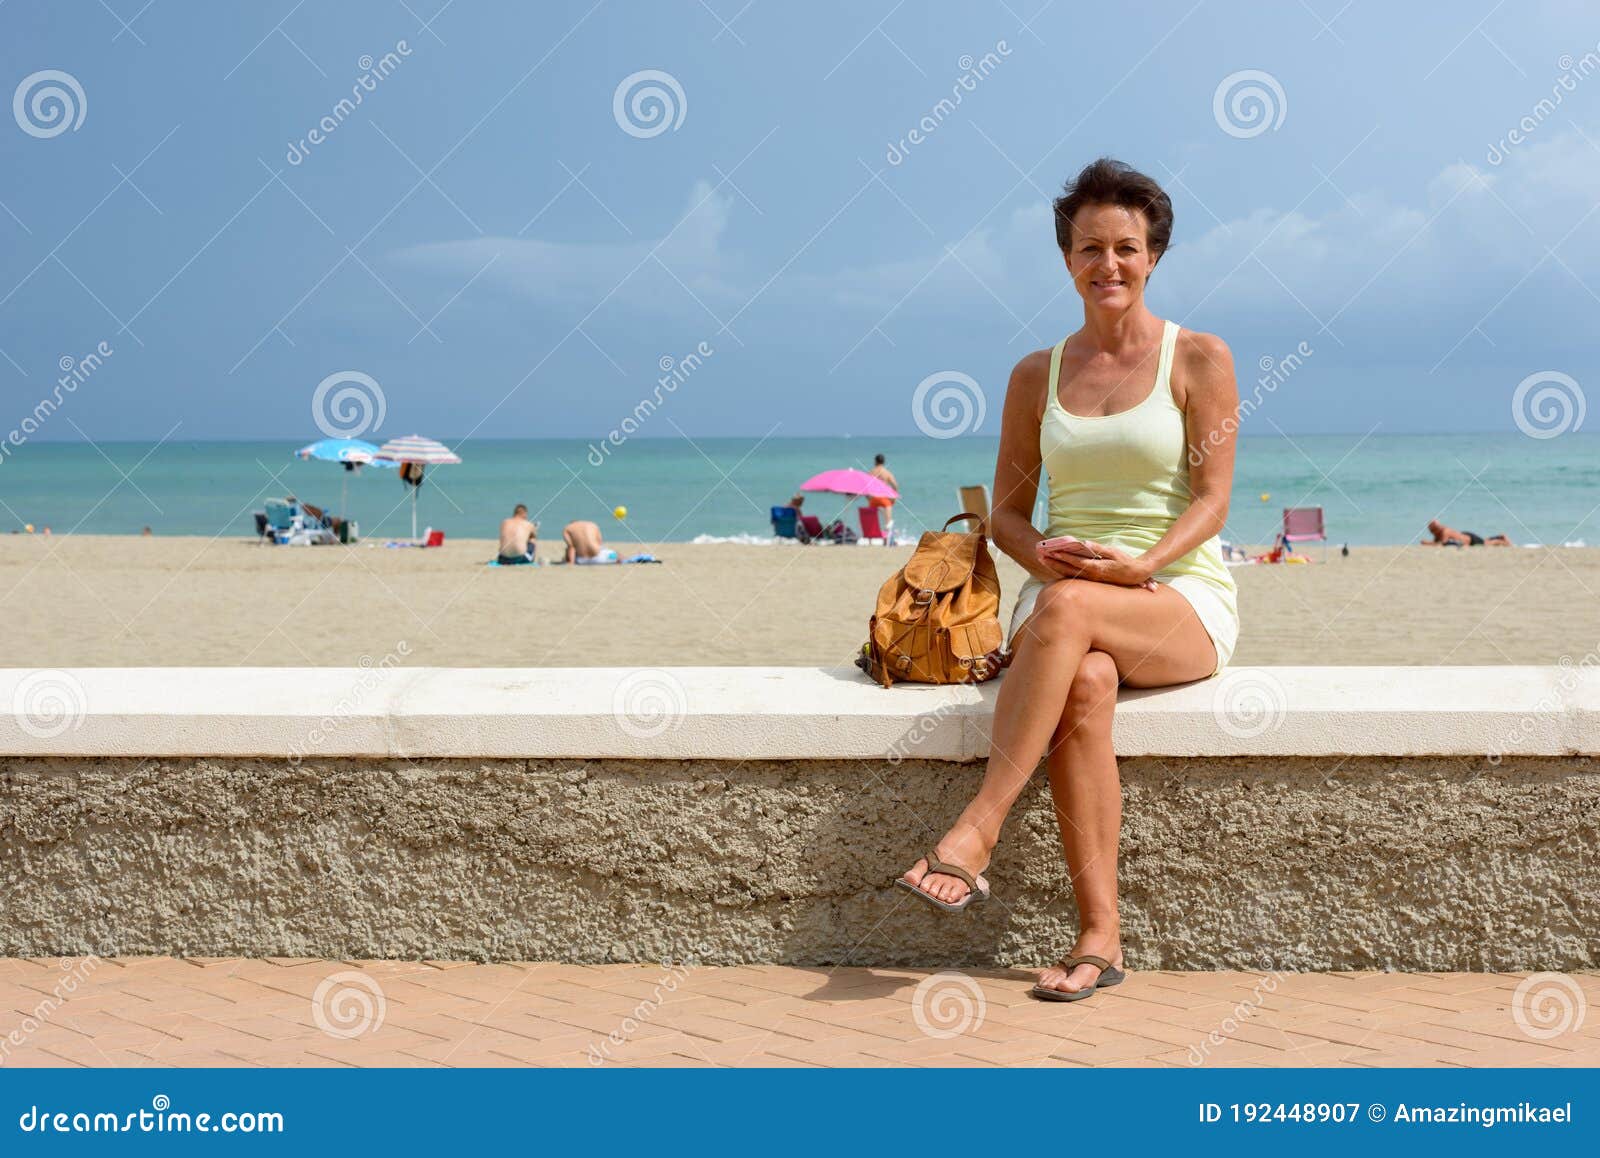 Фото Зрелой Жены На Пляже